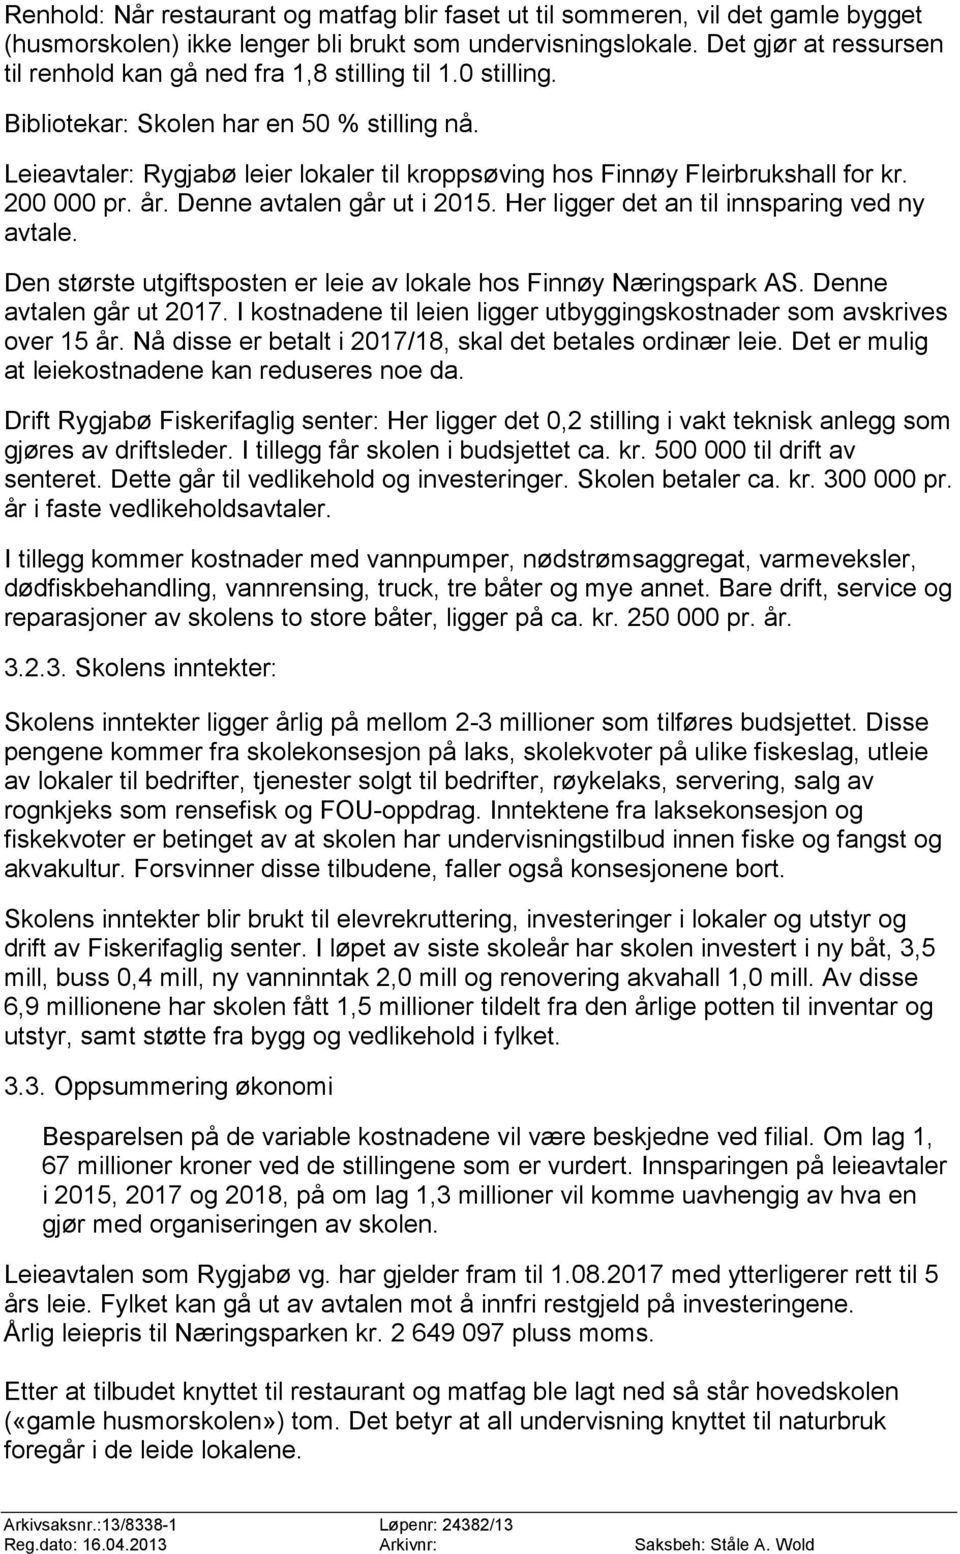 Leieavtaler: Rygjabø leier lokaler til kroppsøving hos Finnøy Fleirbrukshall for kr. 200 000 pr. år. Denne avtalen går ut i 2015. Her ligger det an til innsparing ved ny avtale.